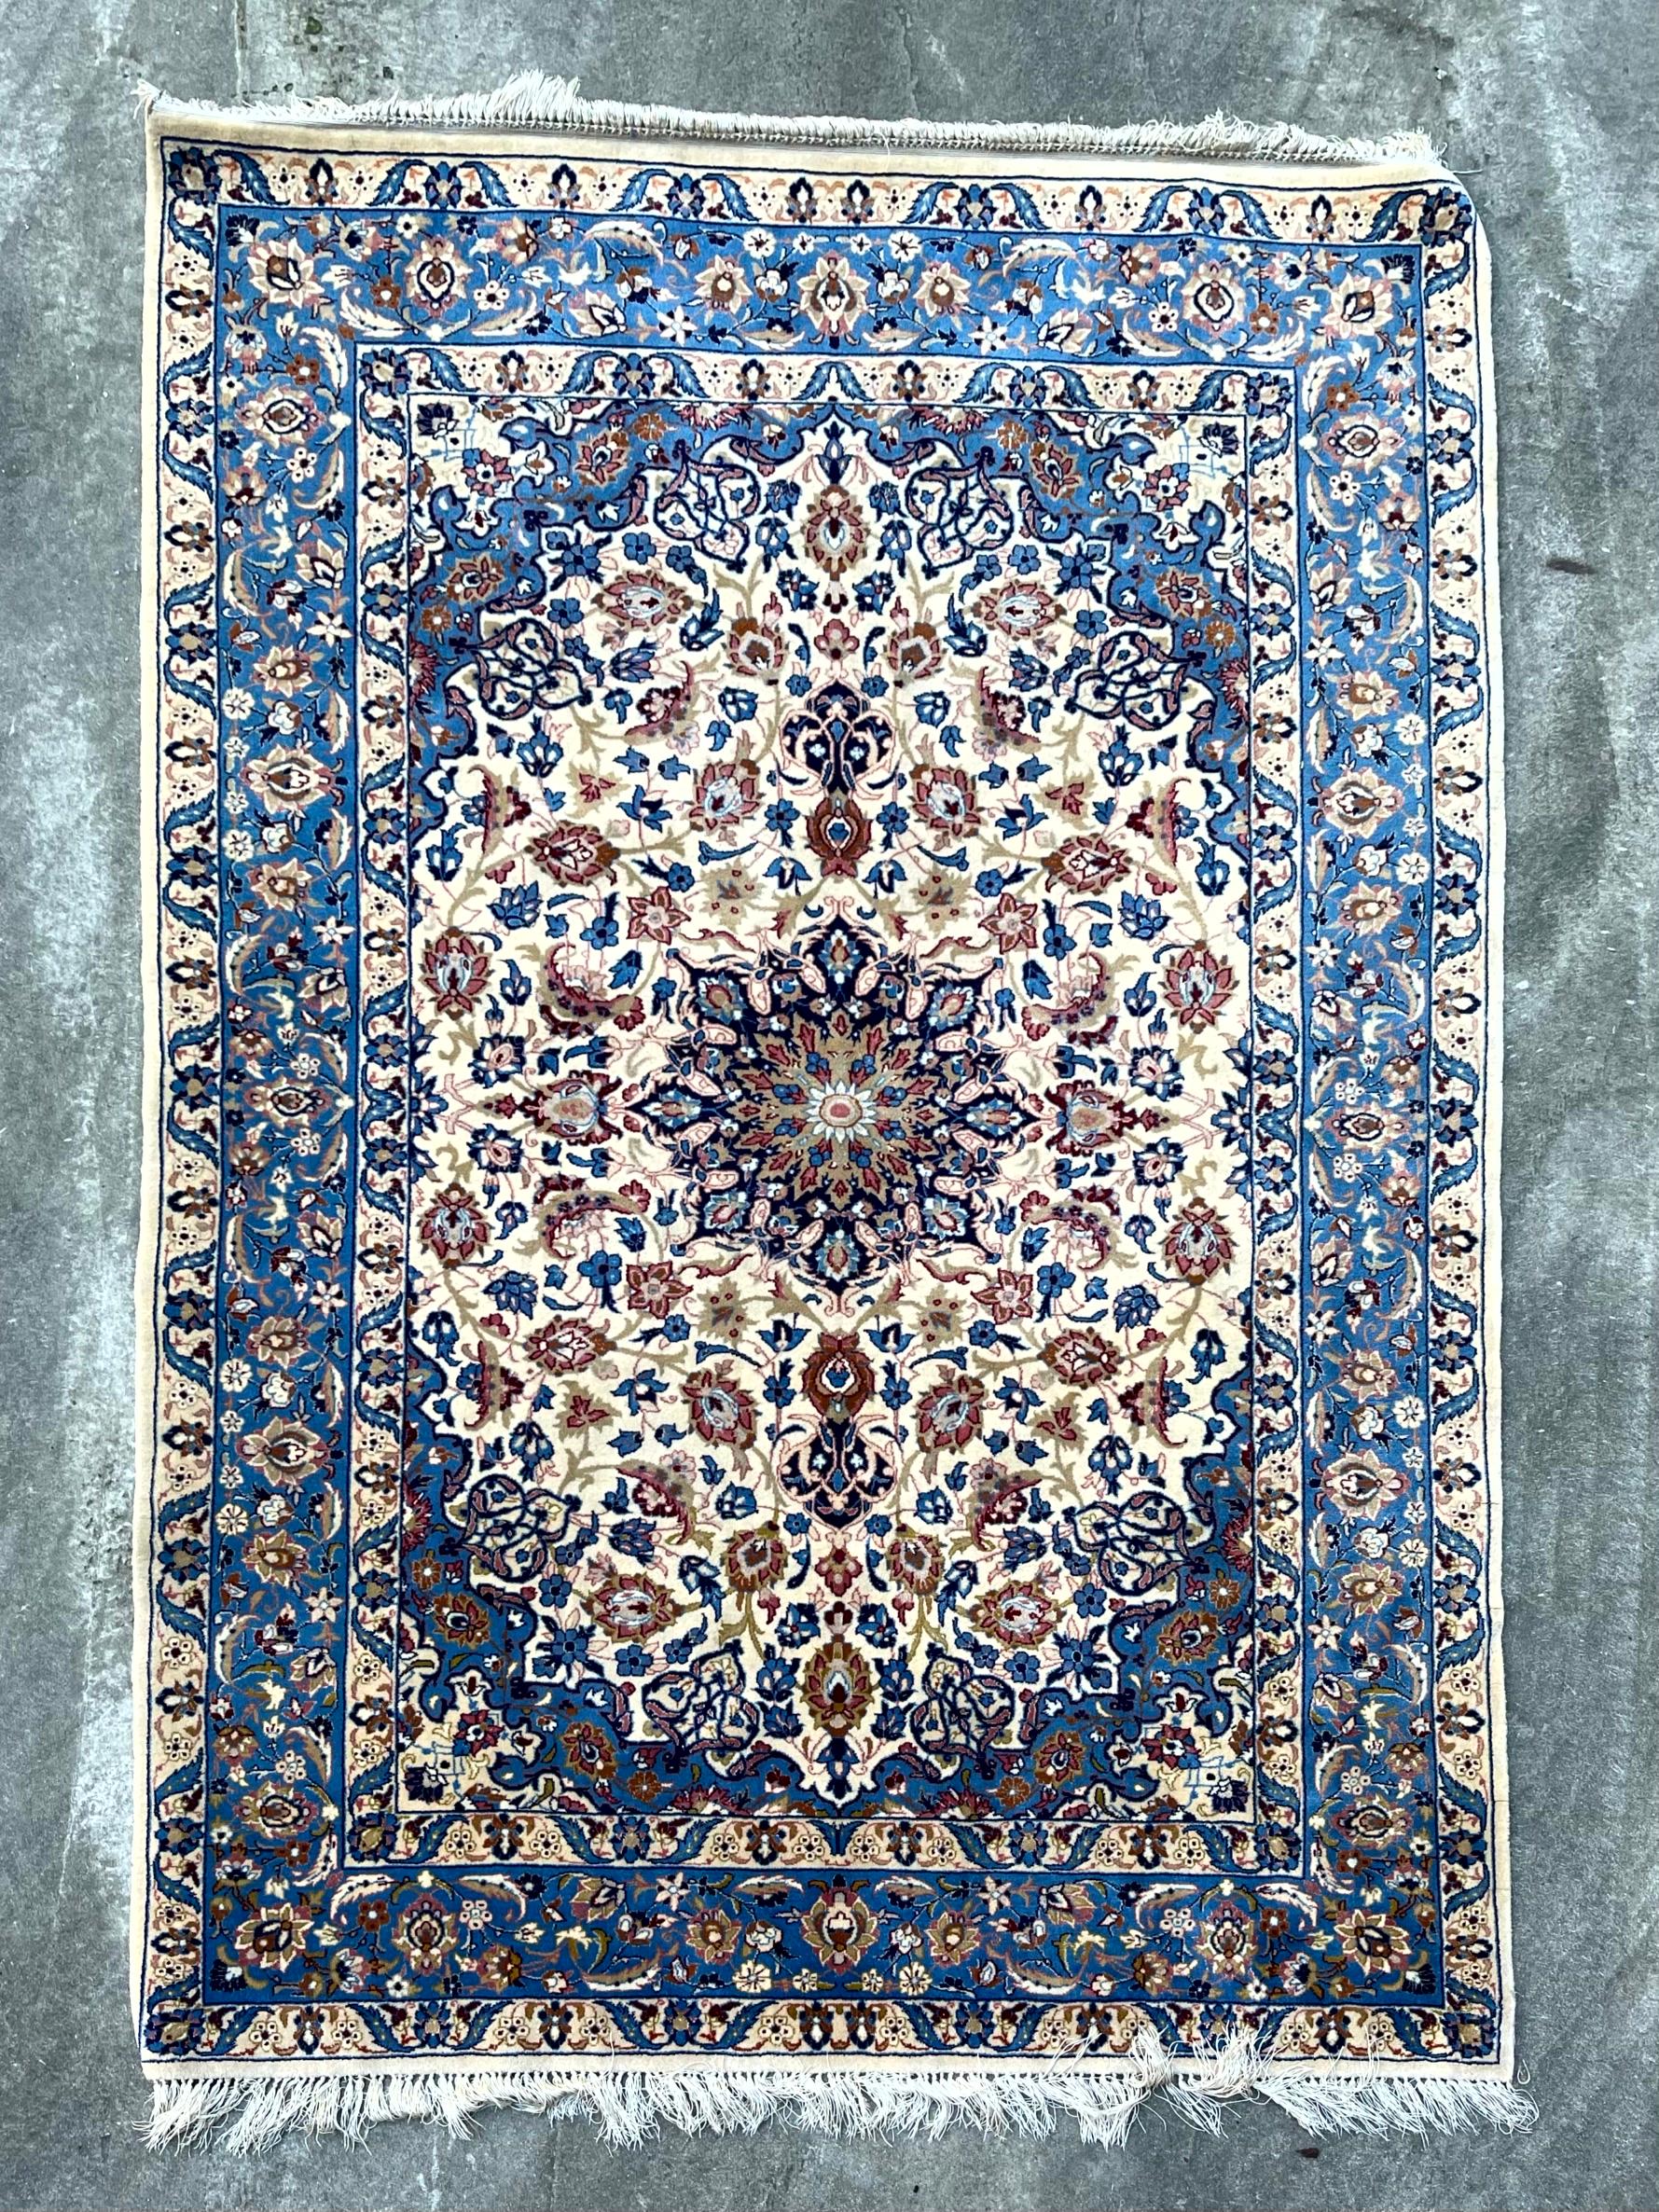 Tappeto Lana Misto seta

Descrizione:
Tappeto Isfahan lana misto seta fondo chiaro con dettagli blu, decoro a rosone floreale centrale.
Il Tappeto è in ottime condizioni come da foto.

Misure (cm):
157*105.